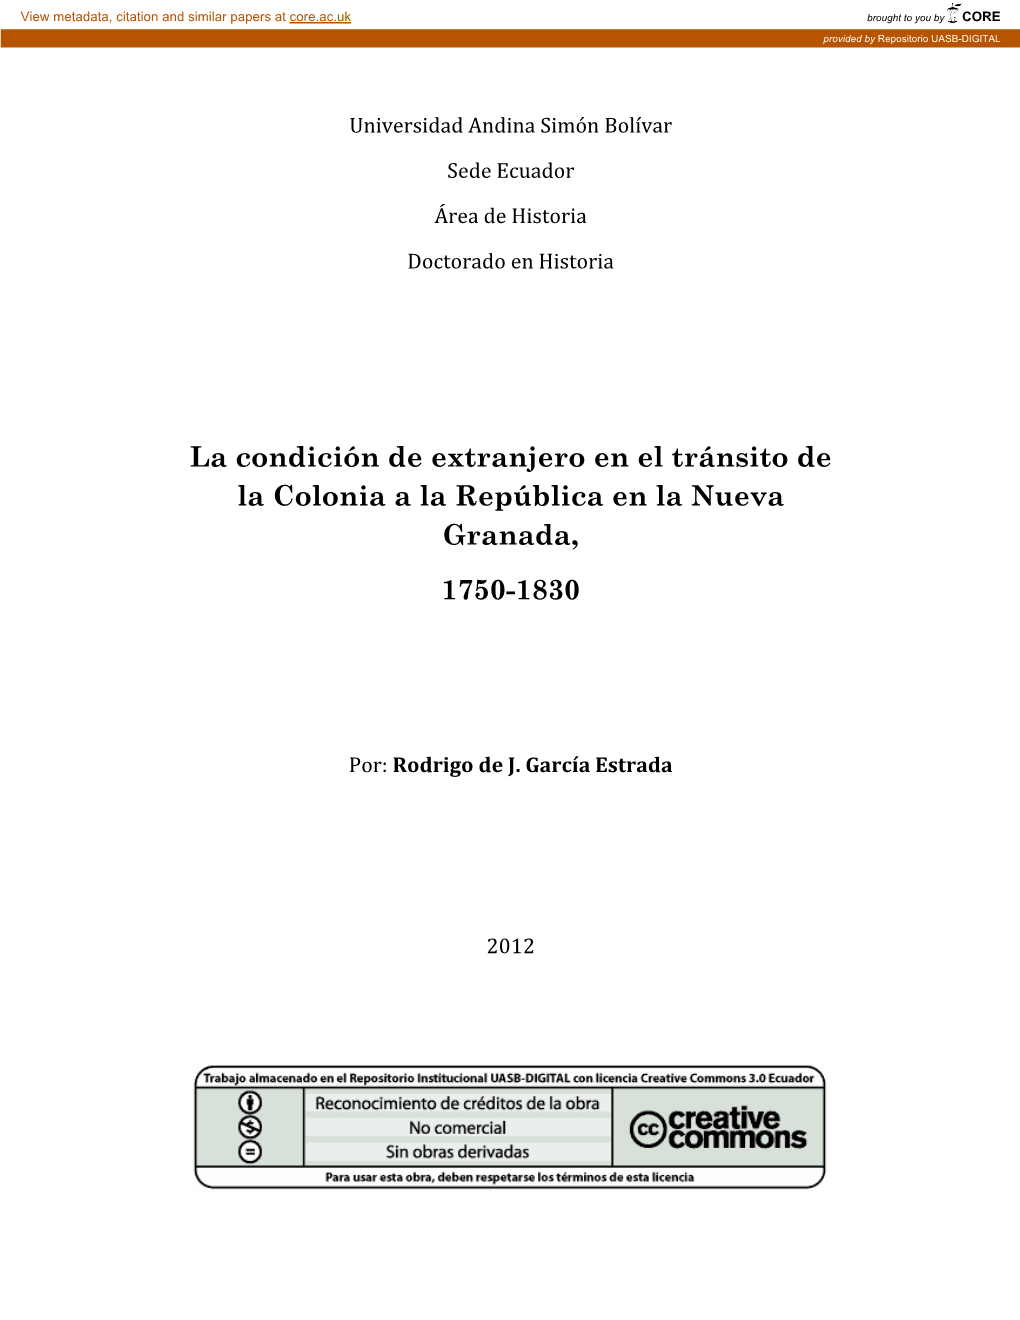 La Condición De Extranjero En El Tránsito De La Colonia a La República En La Nueva Granada, 1750-1830